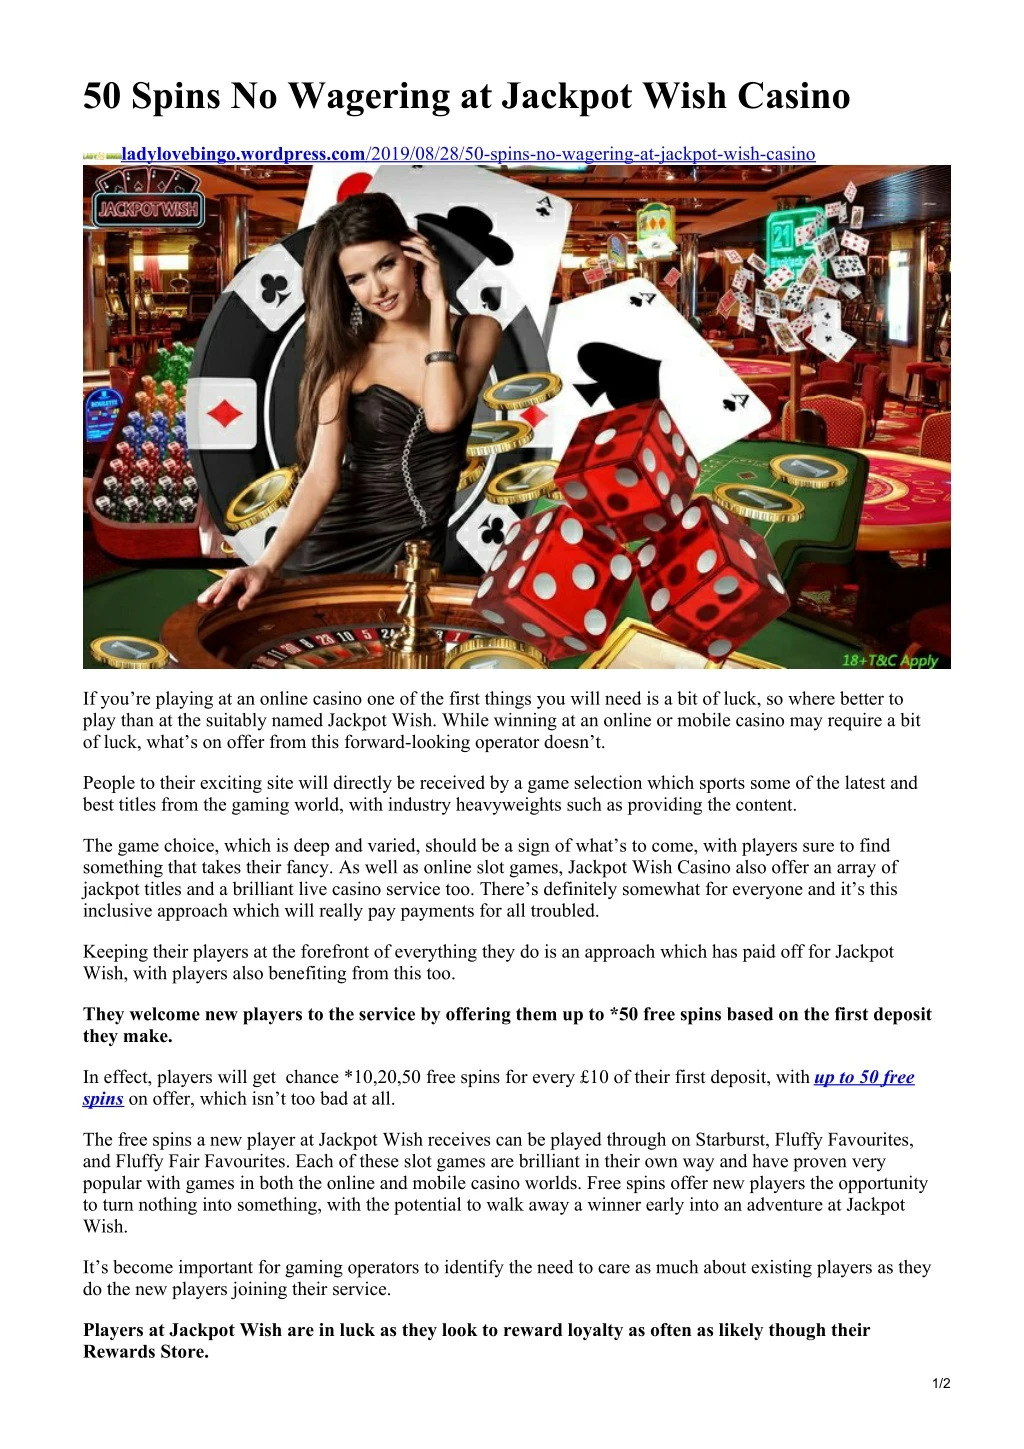 50 spins no wagering at jackpot wish casino